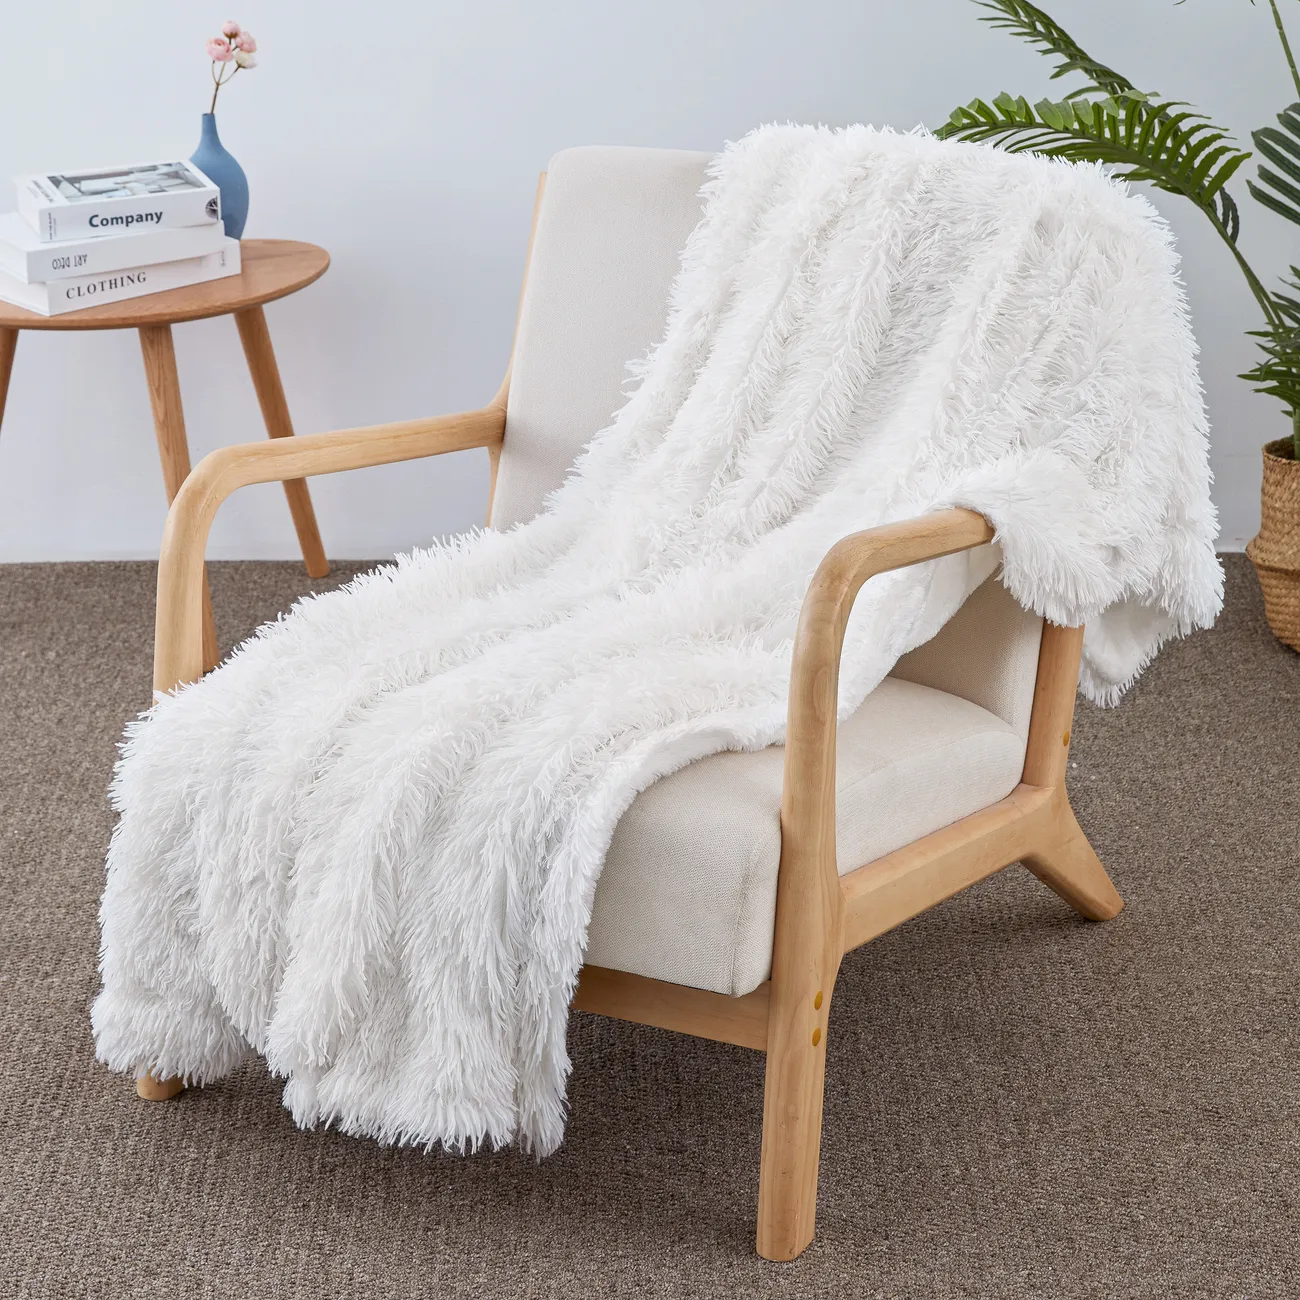 Premium weiße PV-Fleece-Decke - ultraweich, strapazierfähig, maschinenwaschbar - perfekt für Wohnkomfort und stilvolle Dekoration weiß big image 1